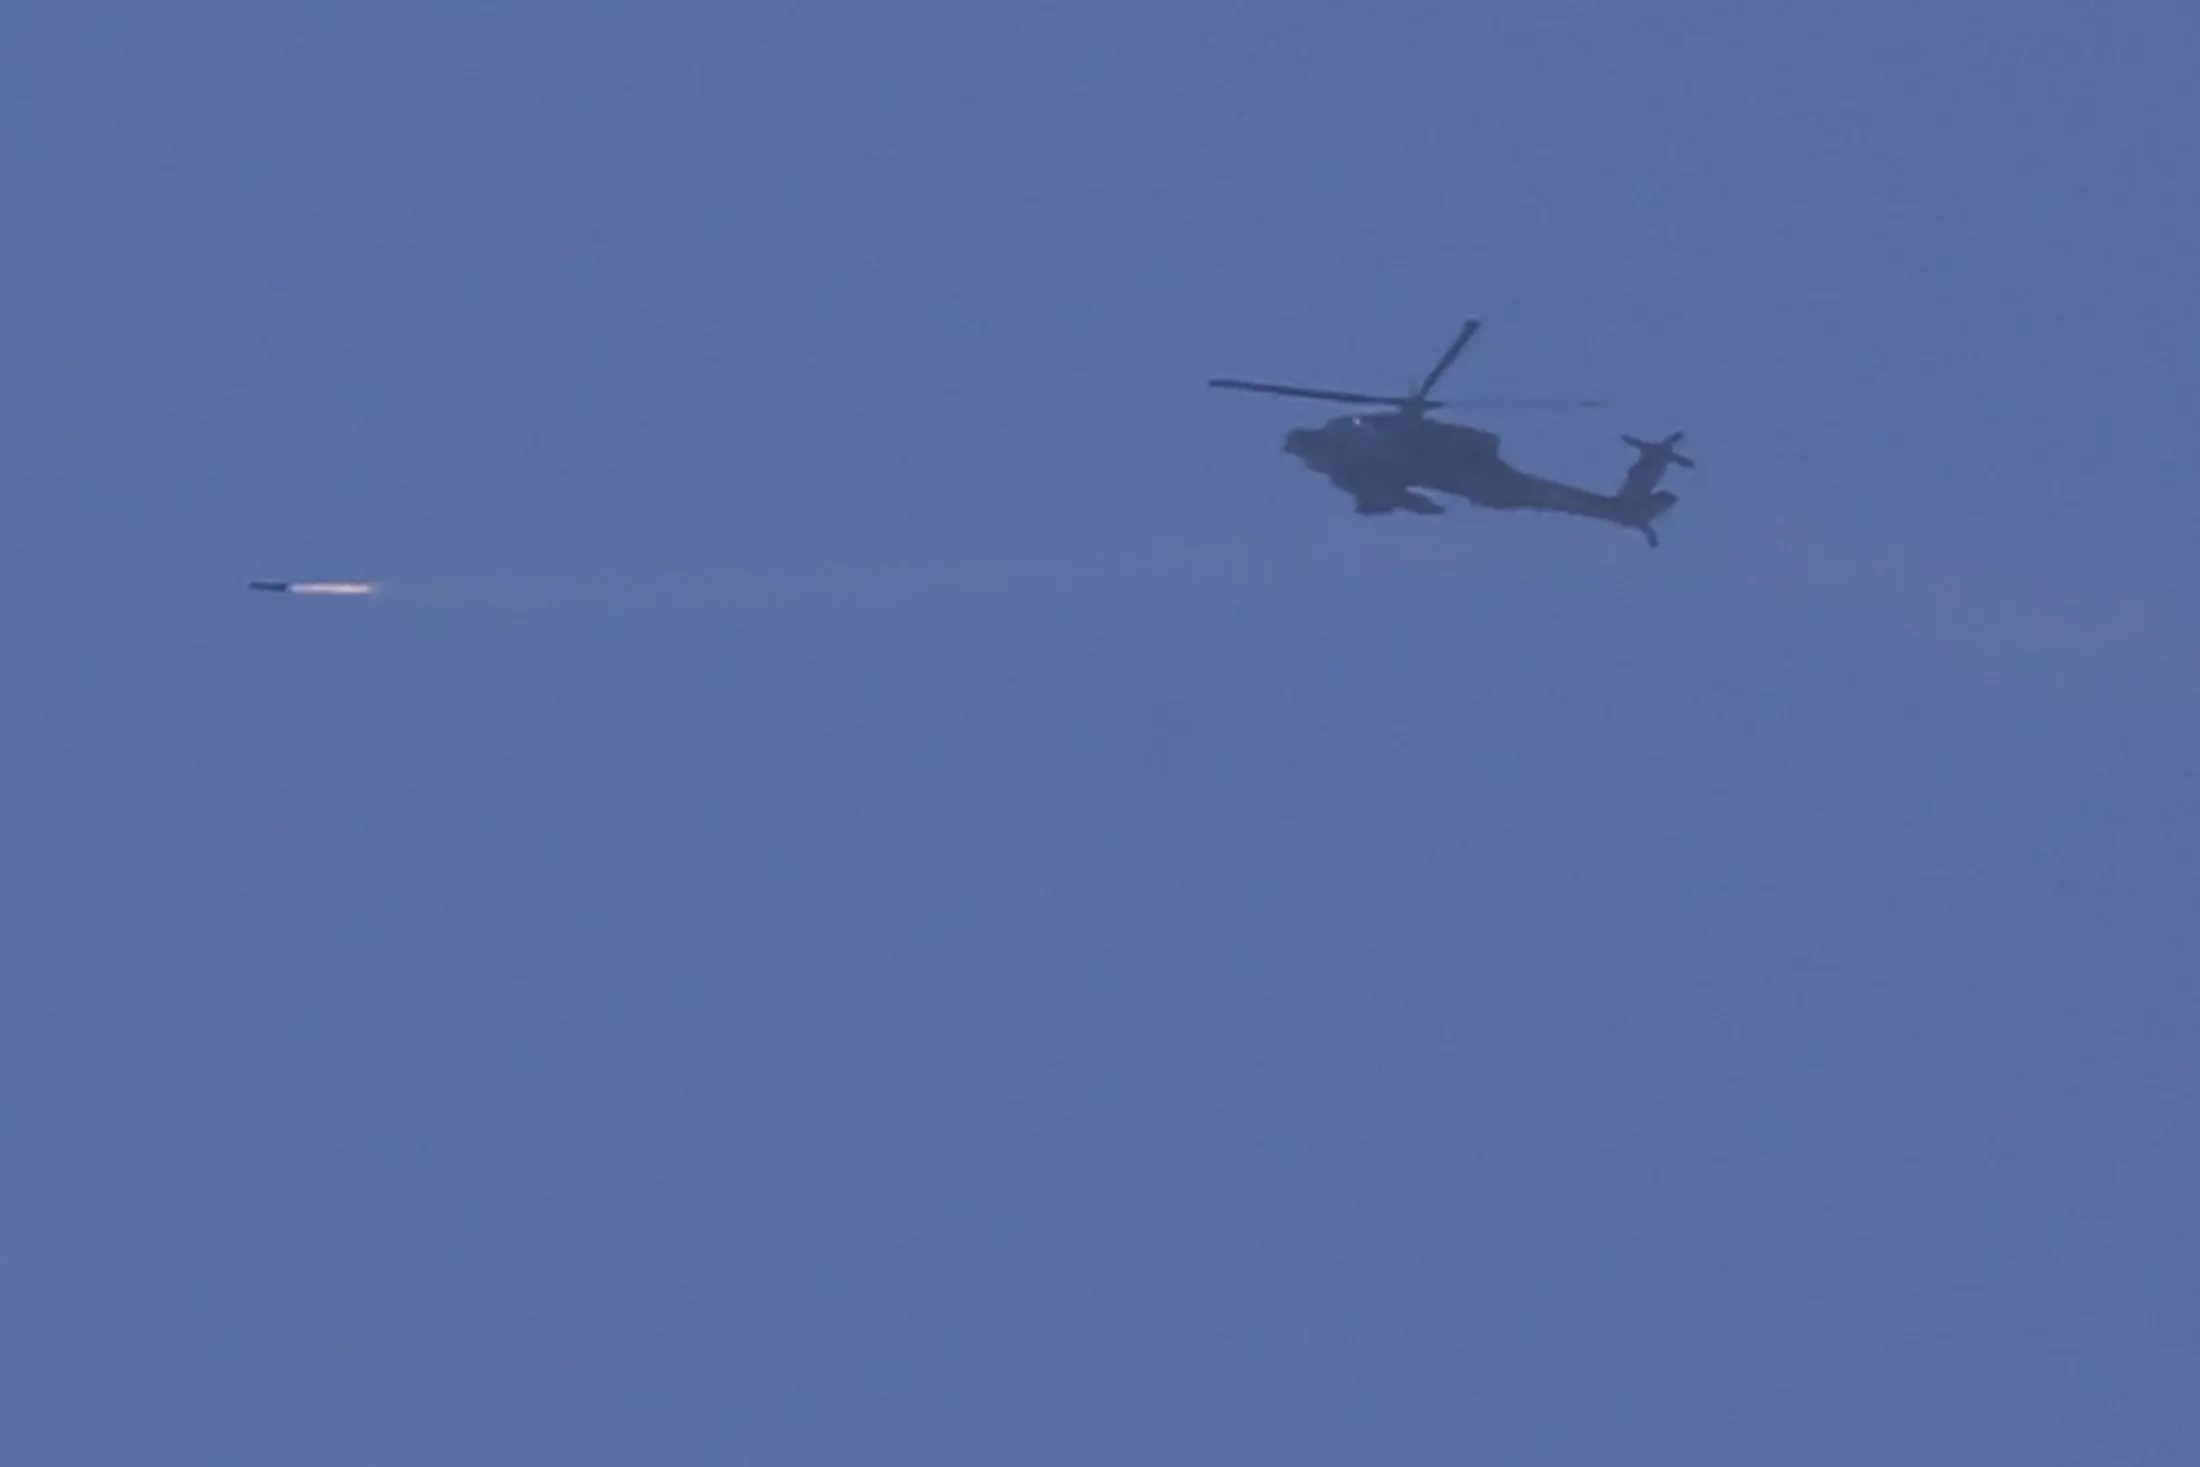 מסוקי קרב ומטוסים הוזנקו לאזור במהלך חילופי האש